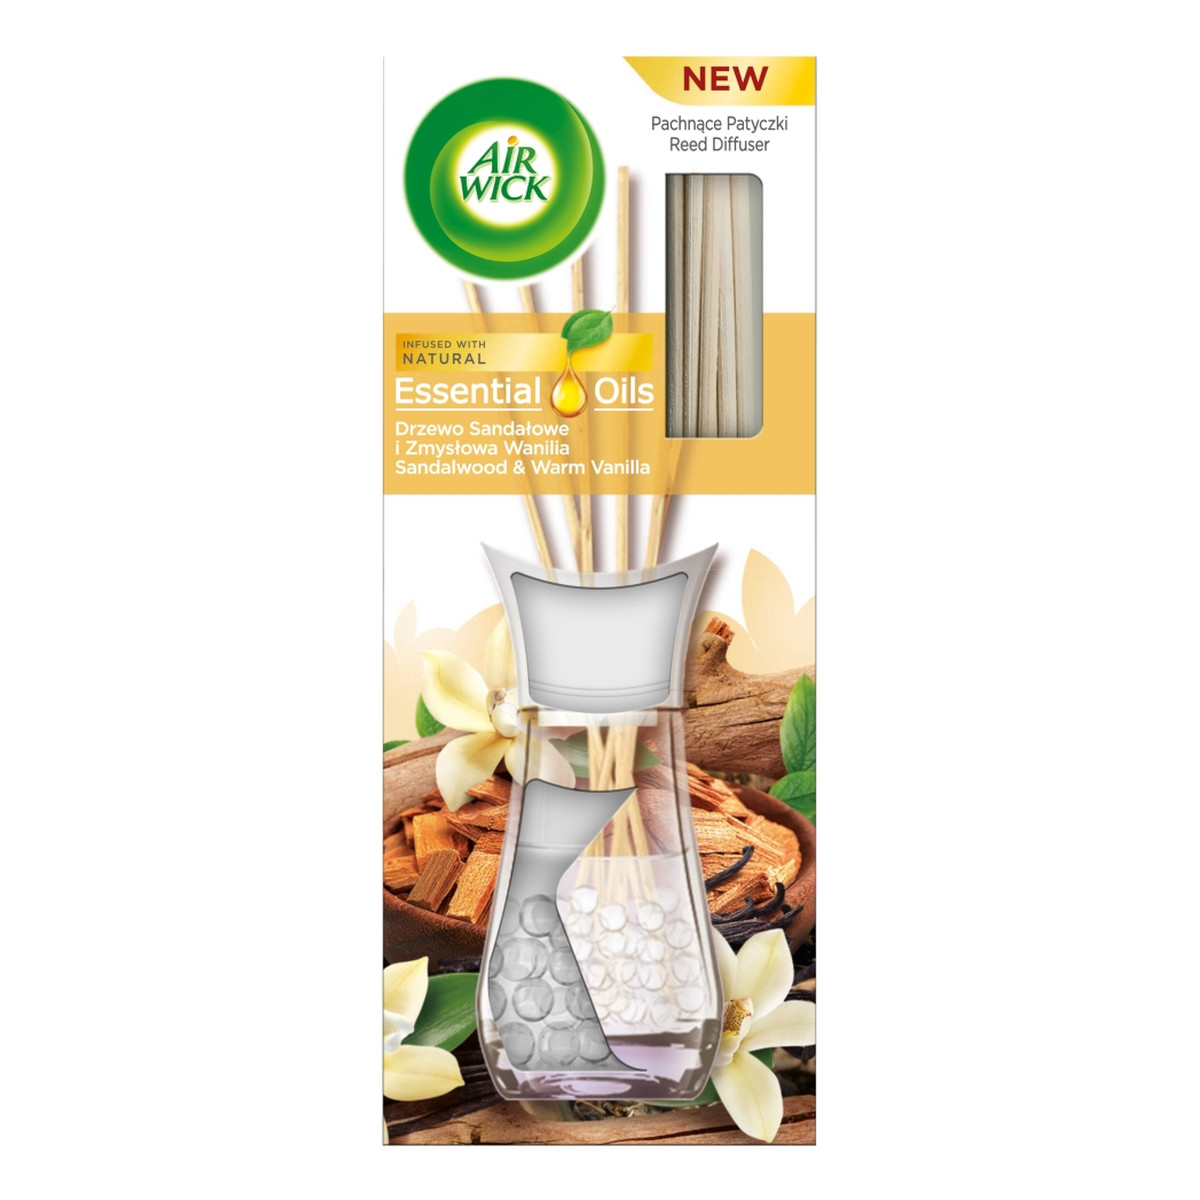 Air Wick Essential Oils pachnące patyczki zapachowe drzewo sandałowe i zmysłowa wanilia 30ml